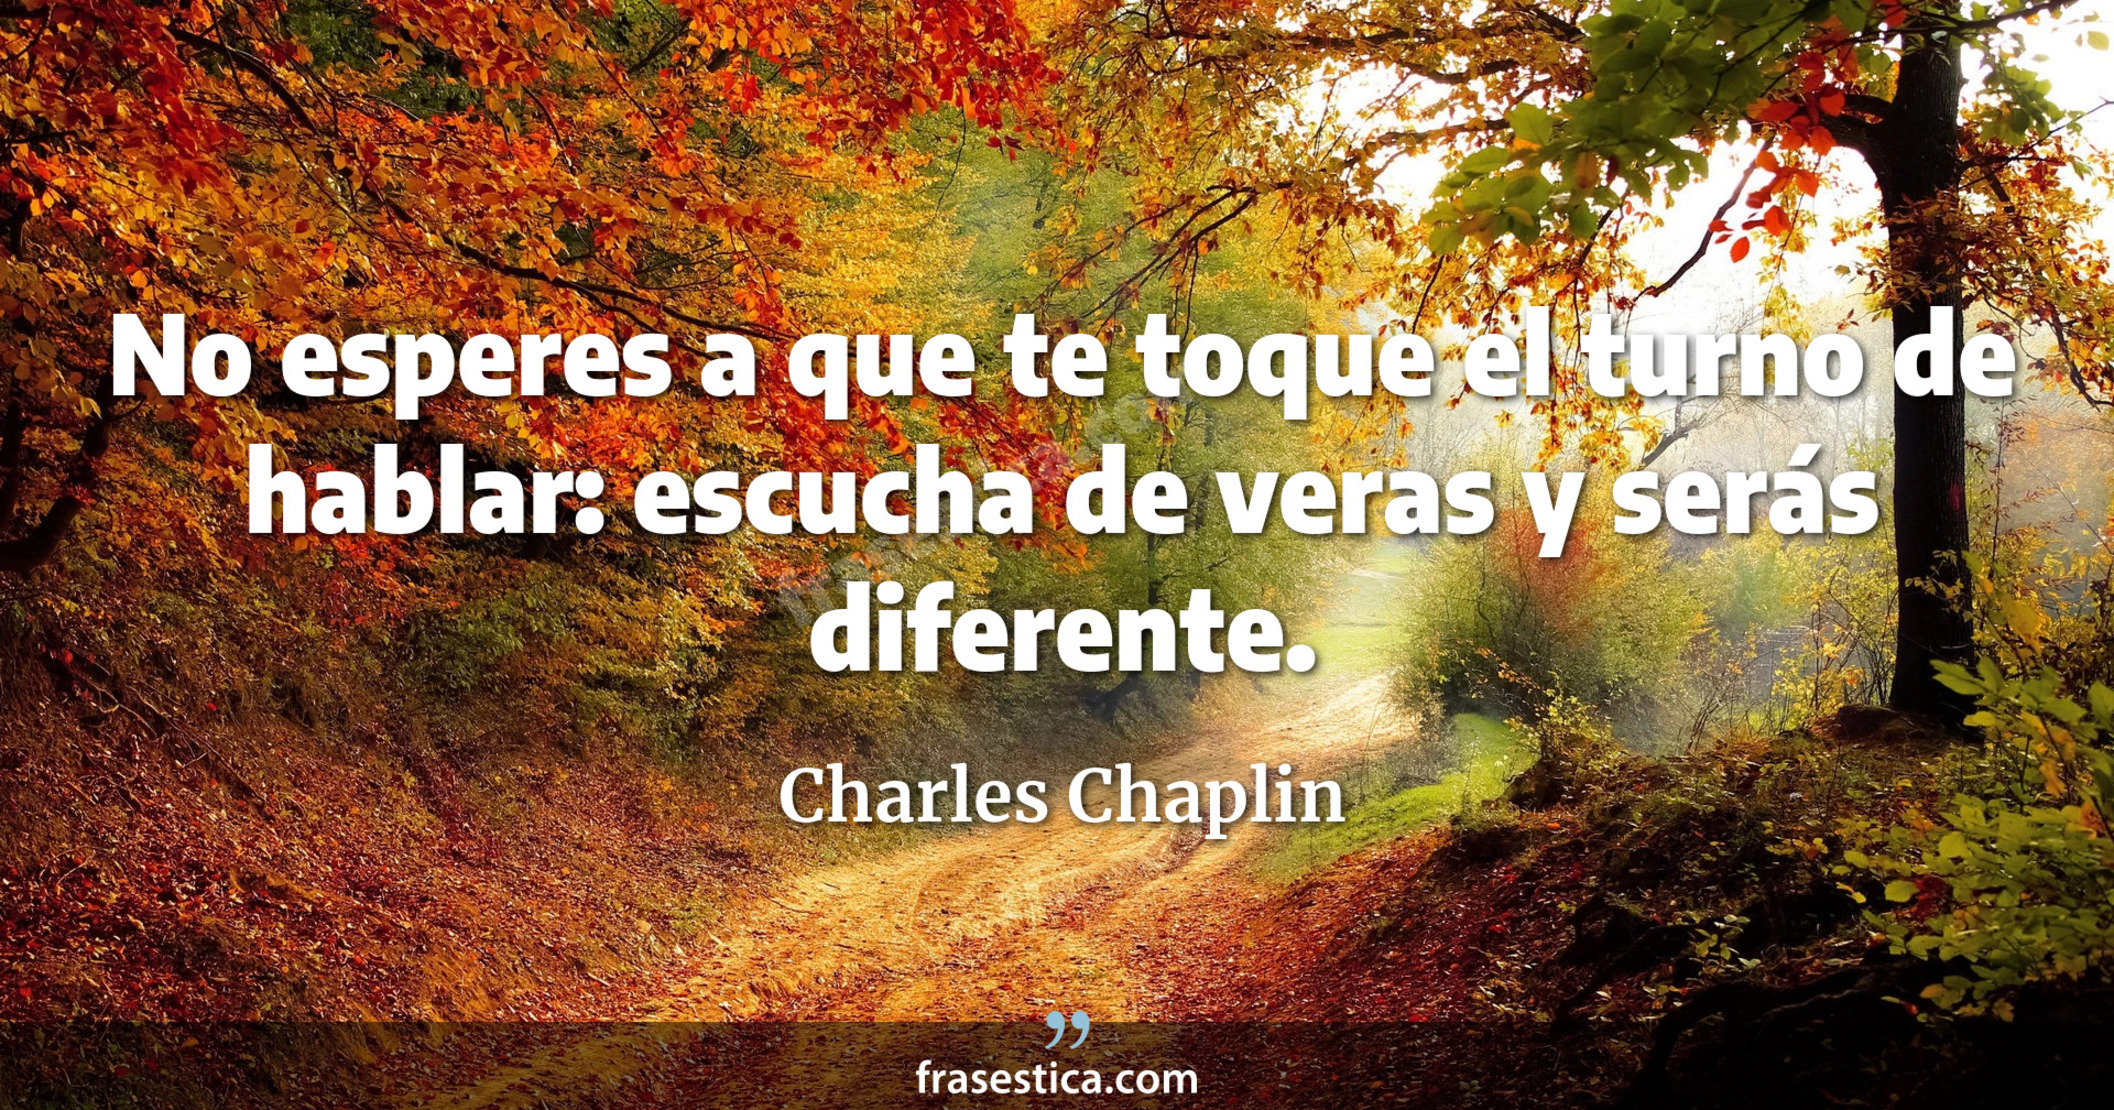 No esperes a que te toque el turno de hablar: escucha de veras y serás diferente. - Charles Chaplin